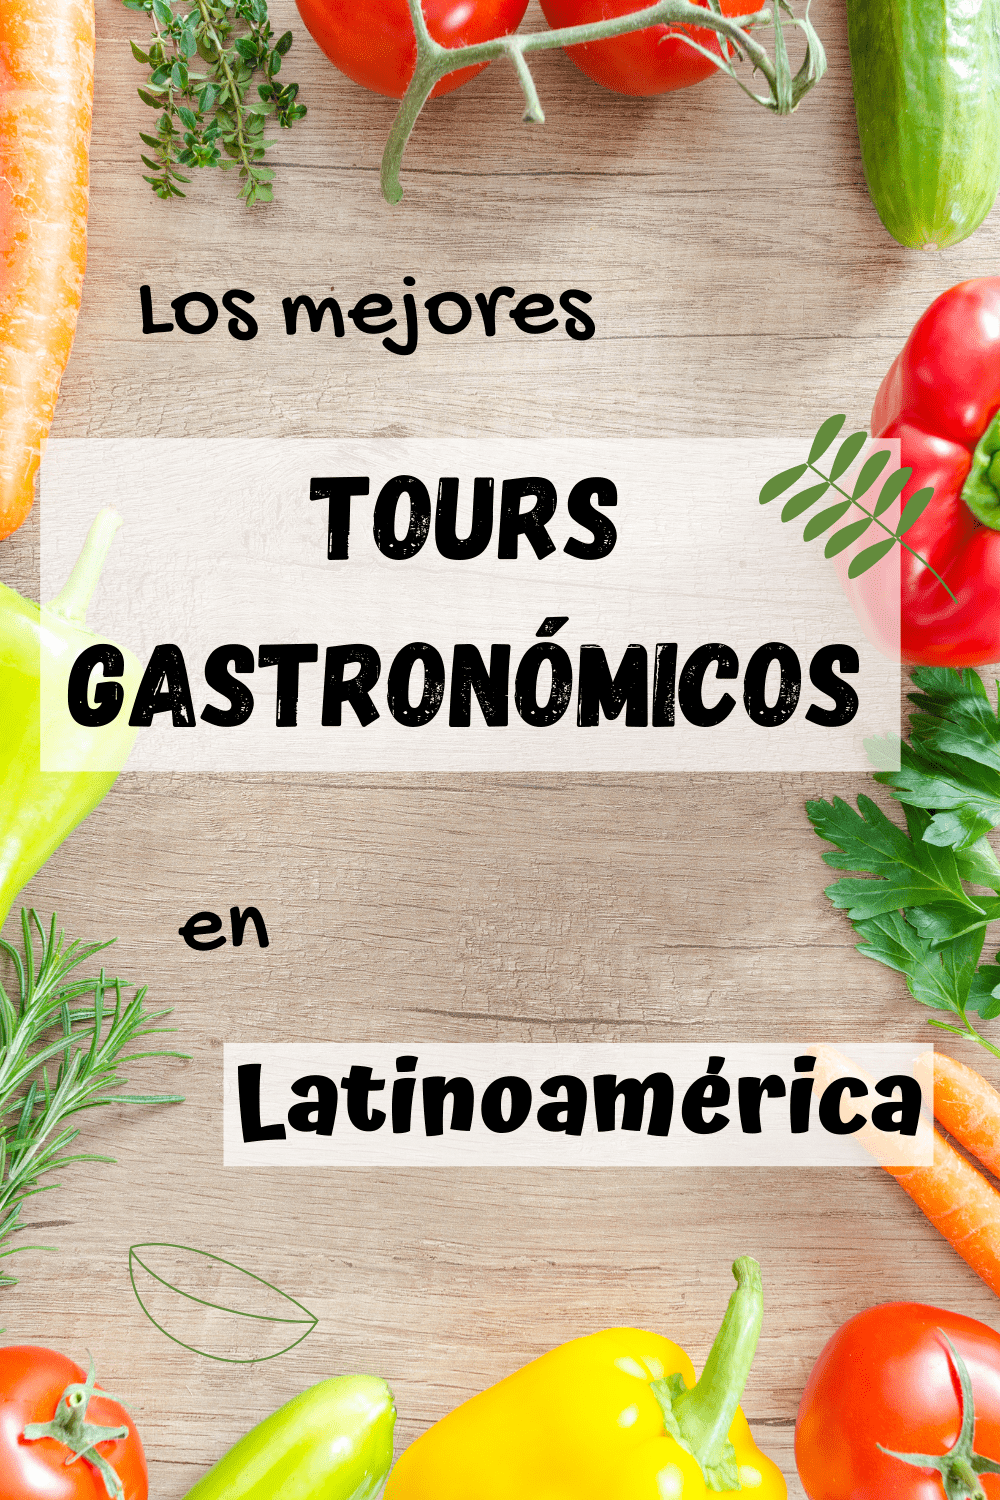 Tours gastronómicos en Latinoamérica